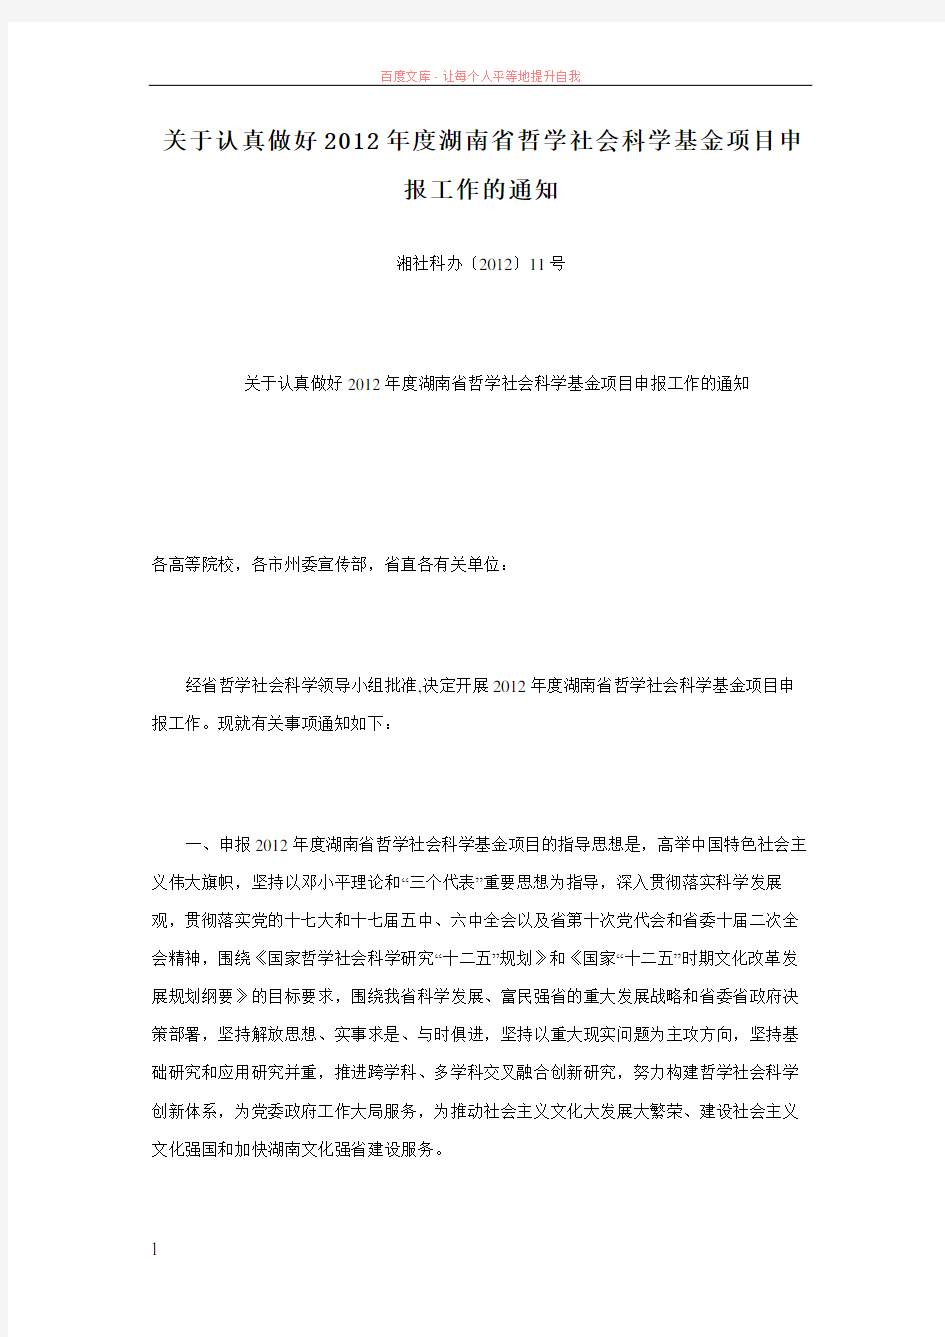 关于认真做好2019年度湖南省哲学社会科学基金项目申报工作的通知 (1)